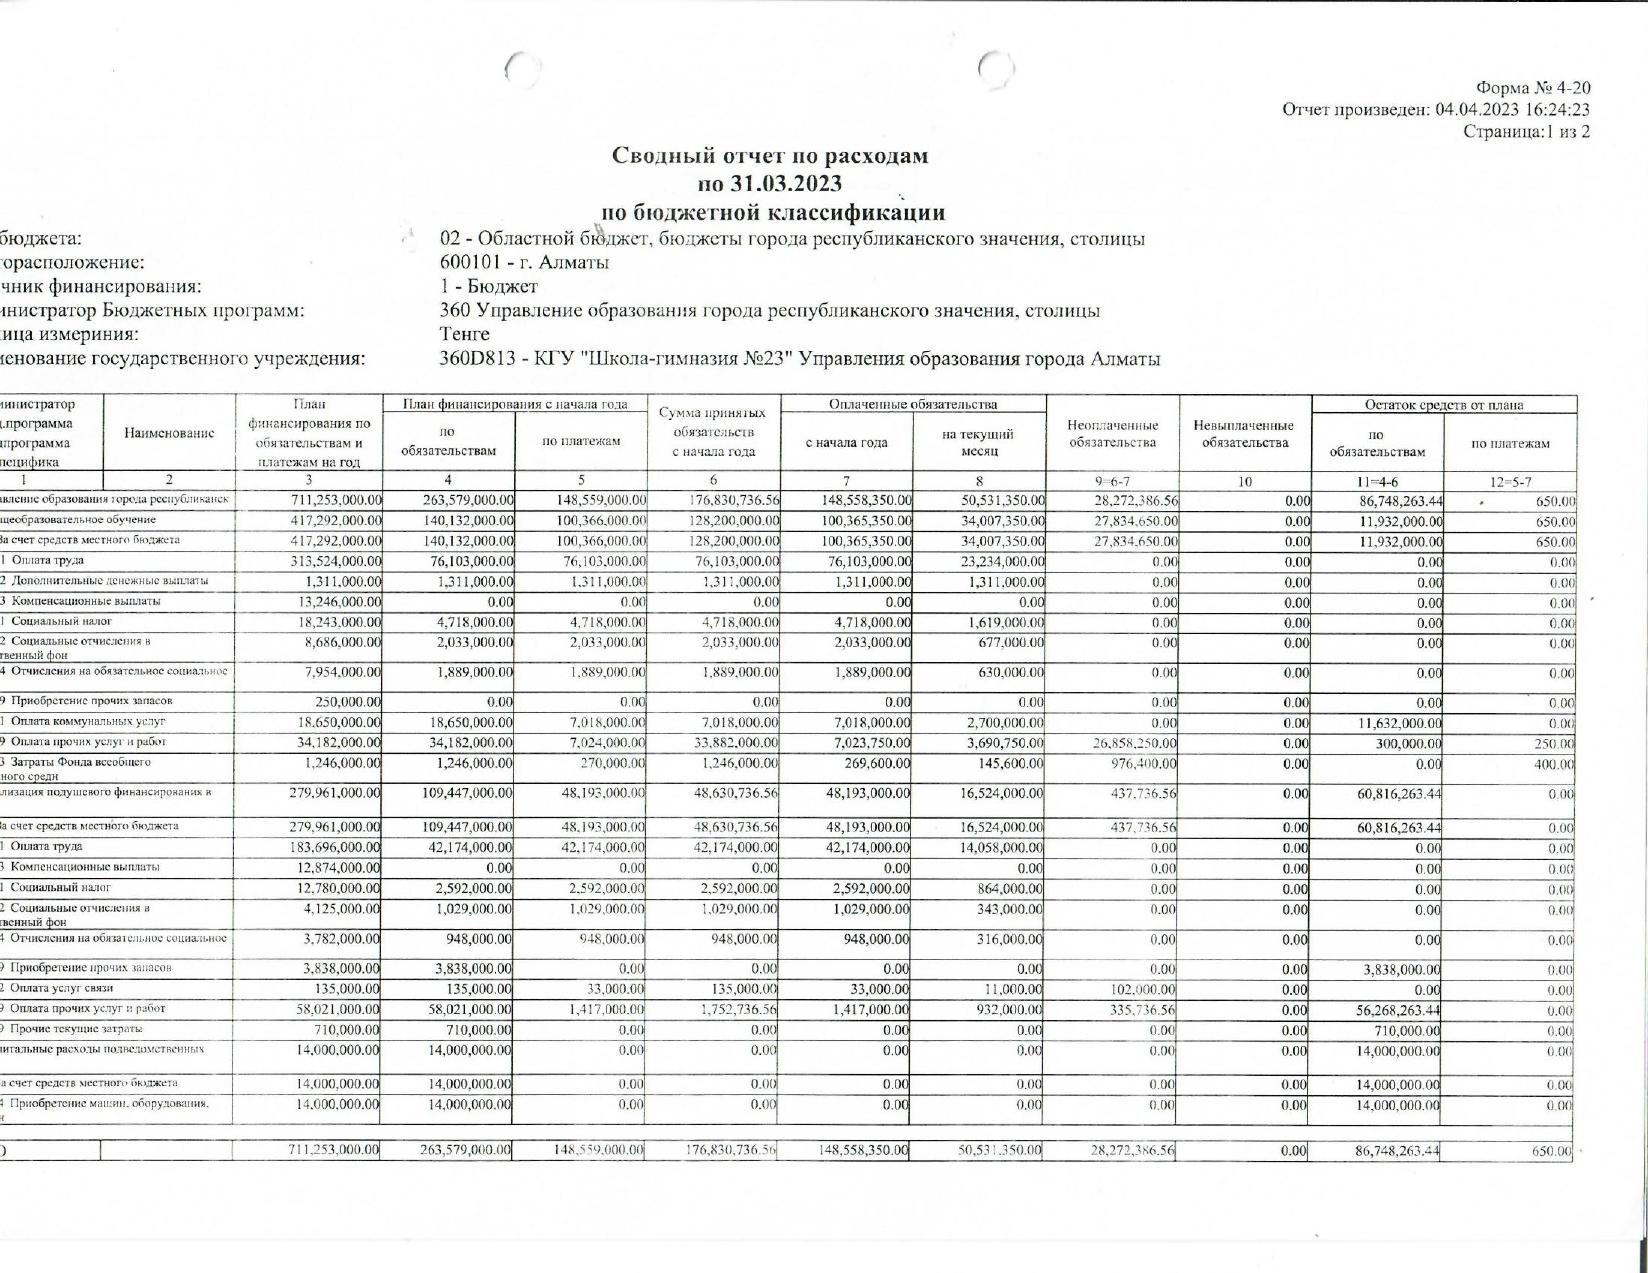 СВОДНЫЙ отчет по расходам по 31.03.2023 по бюджетной классификации